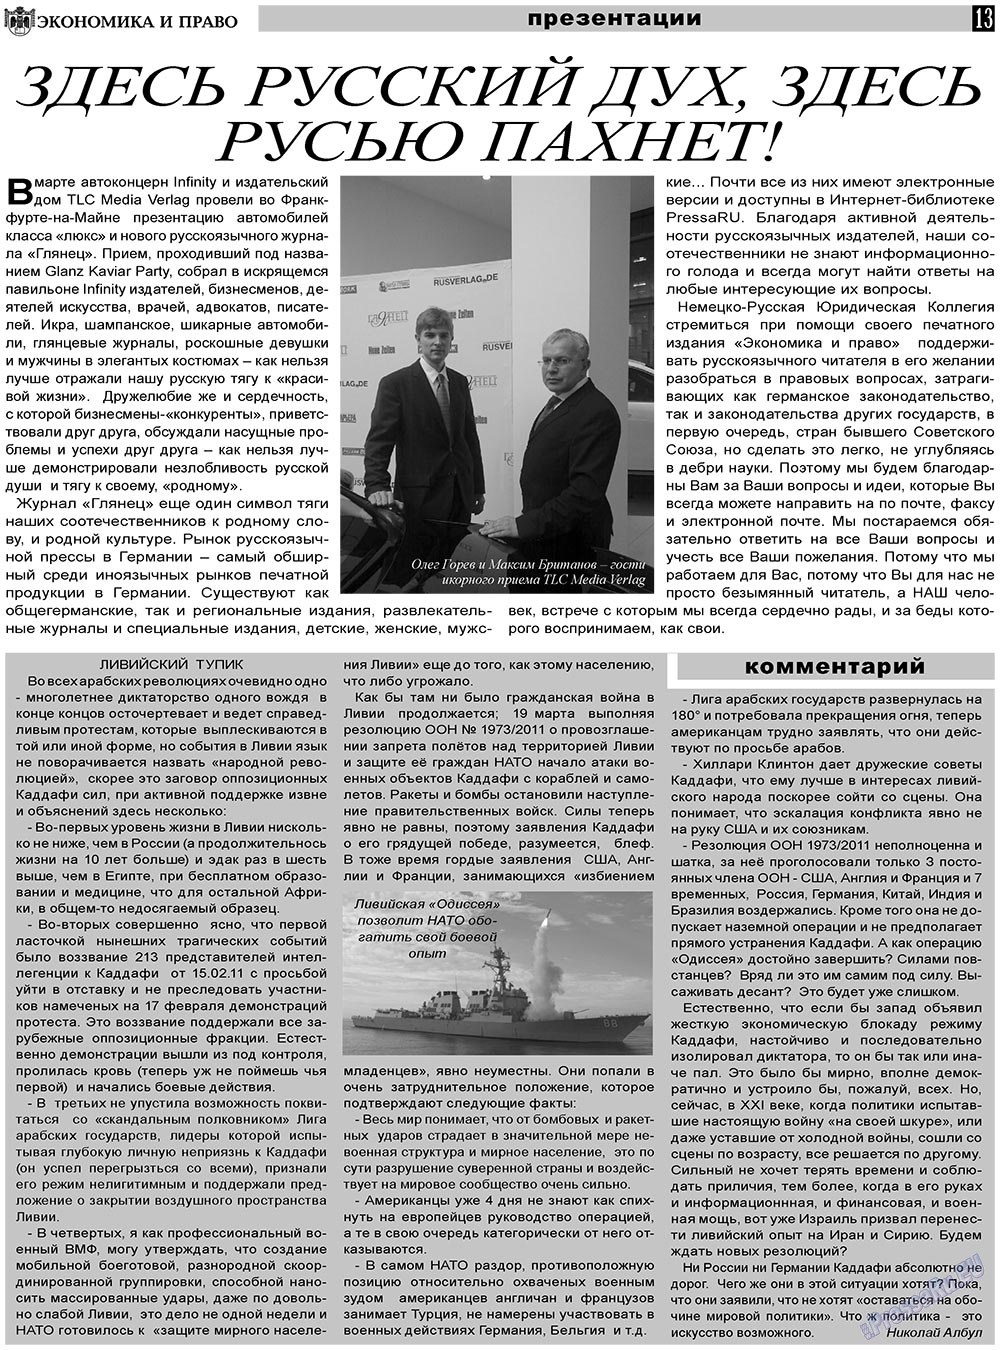 Экономика и право, газета. 2011 №4 стр.13